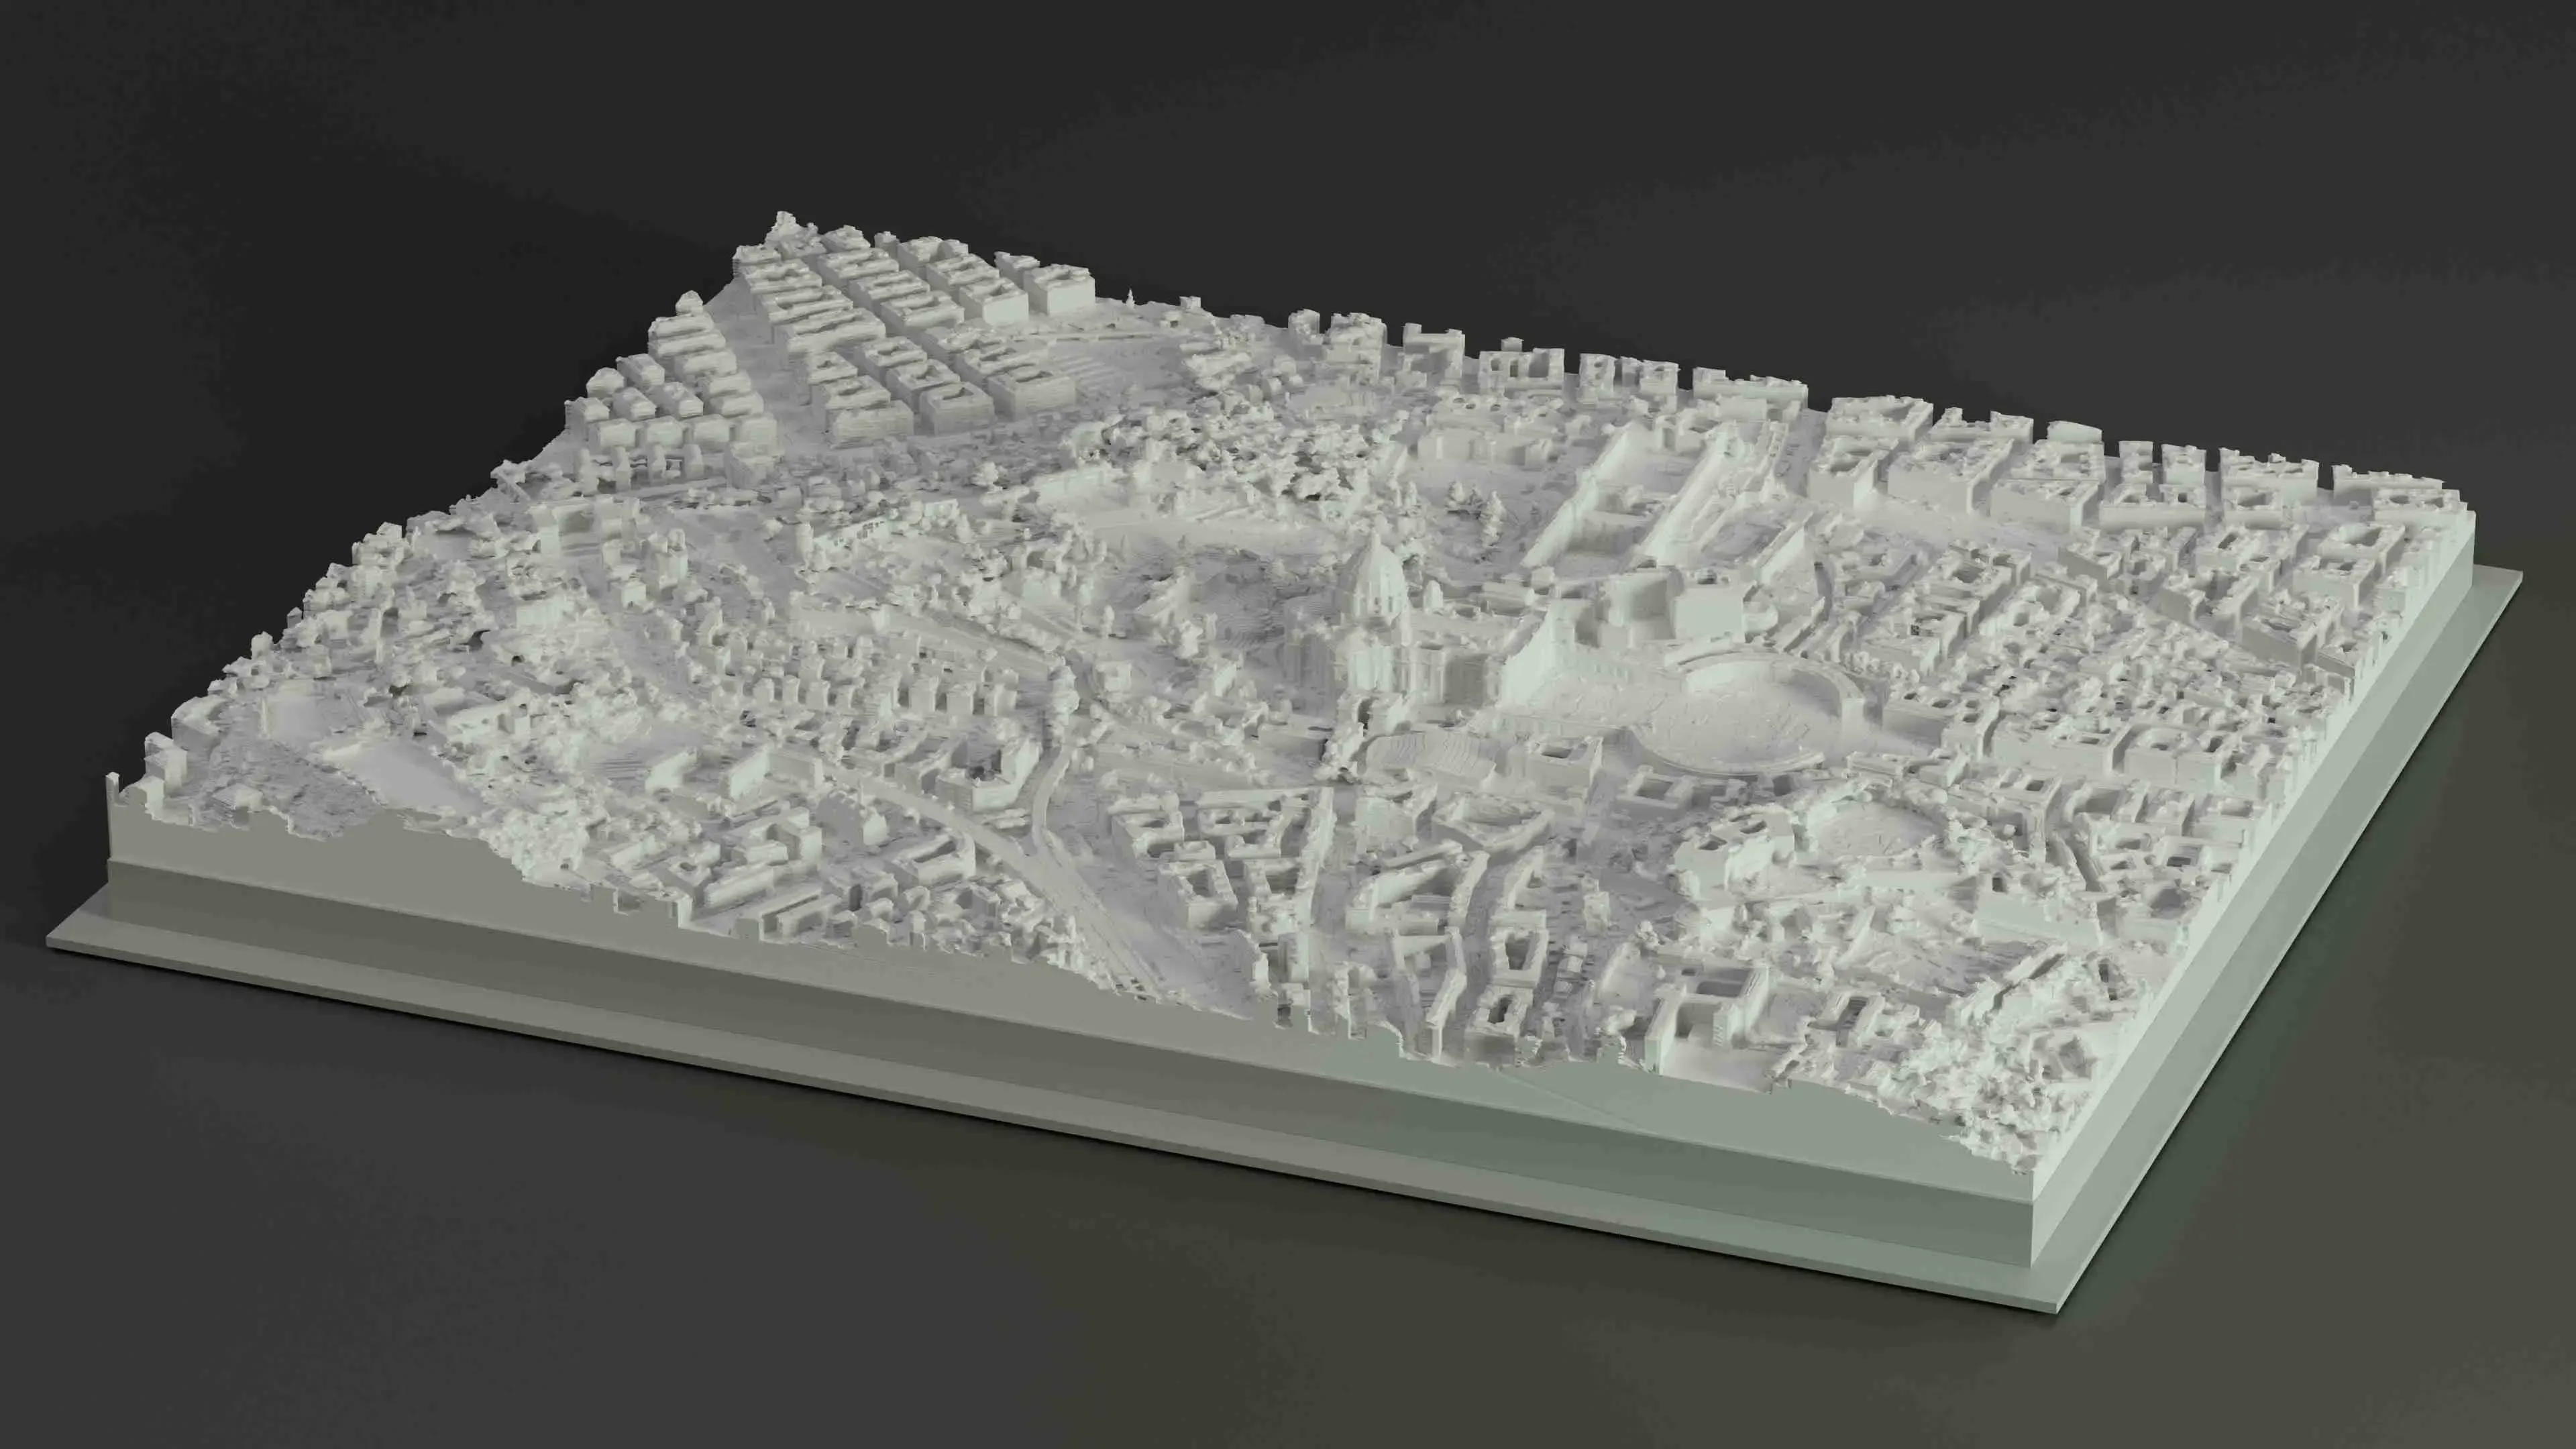 3D MODEL OF THE VATICAN, VATICAN CITY